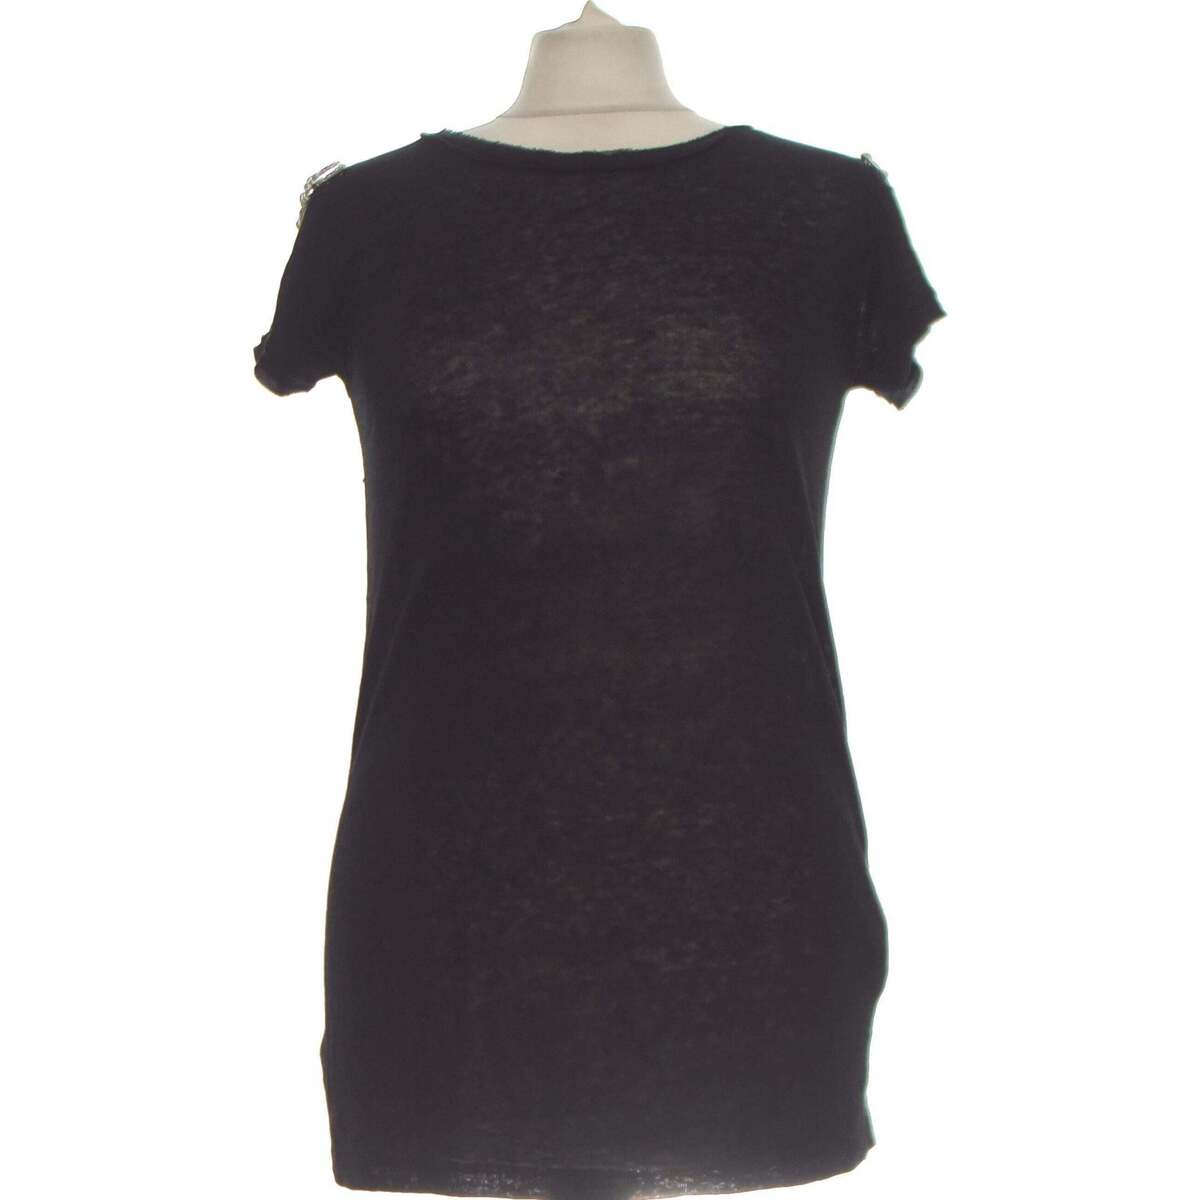 Vêtements Femme Denver Black Aqua Sweatshirt Zara top manches courtes  36 - T1 - S Noir Noir